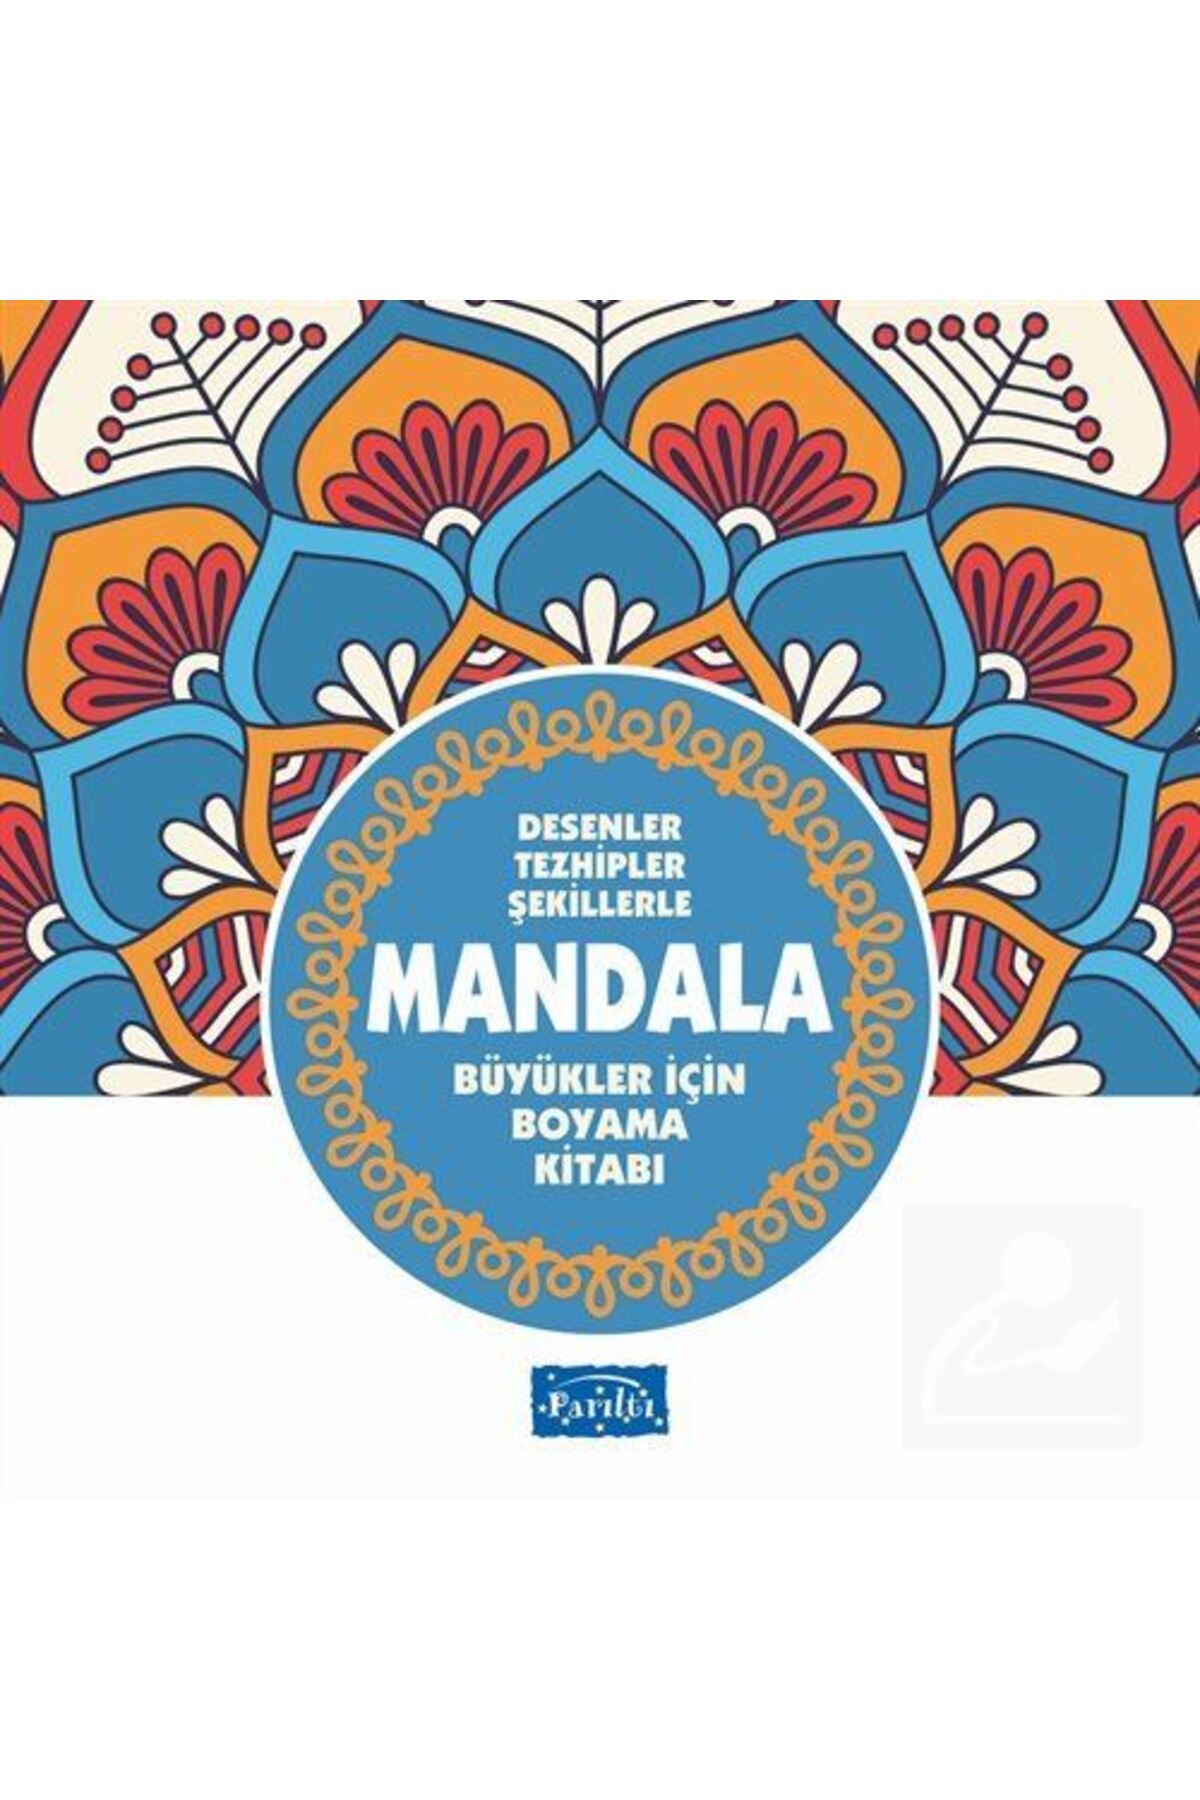 Parıltı Yayıncılık Mandala Büyükler Için Boyama (MAVİ KİTAP) & Desenler, Tezhipler, Şekillerle